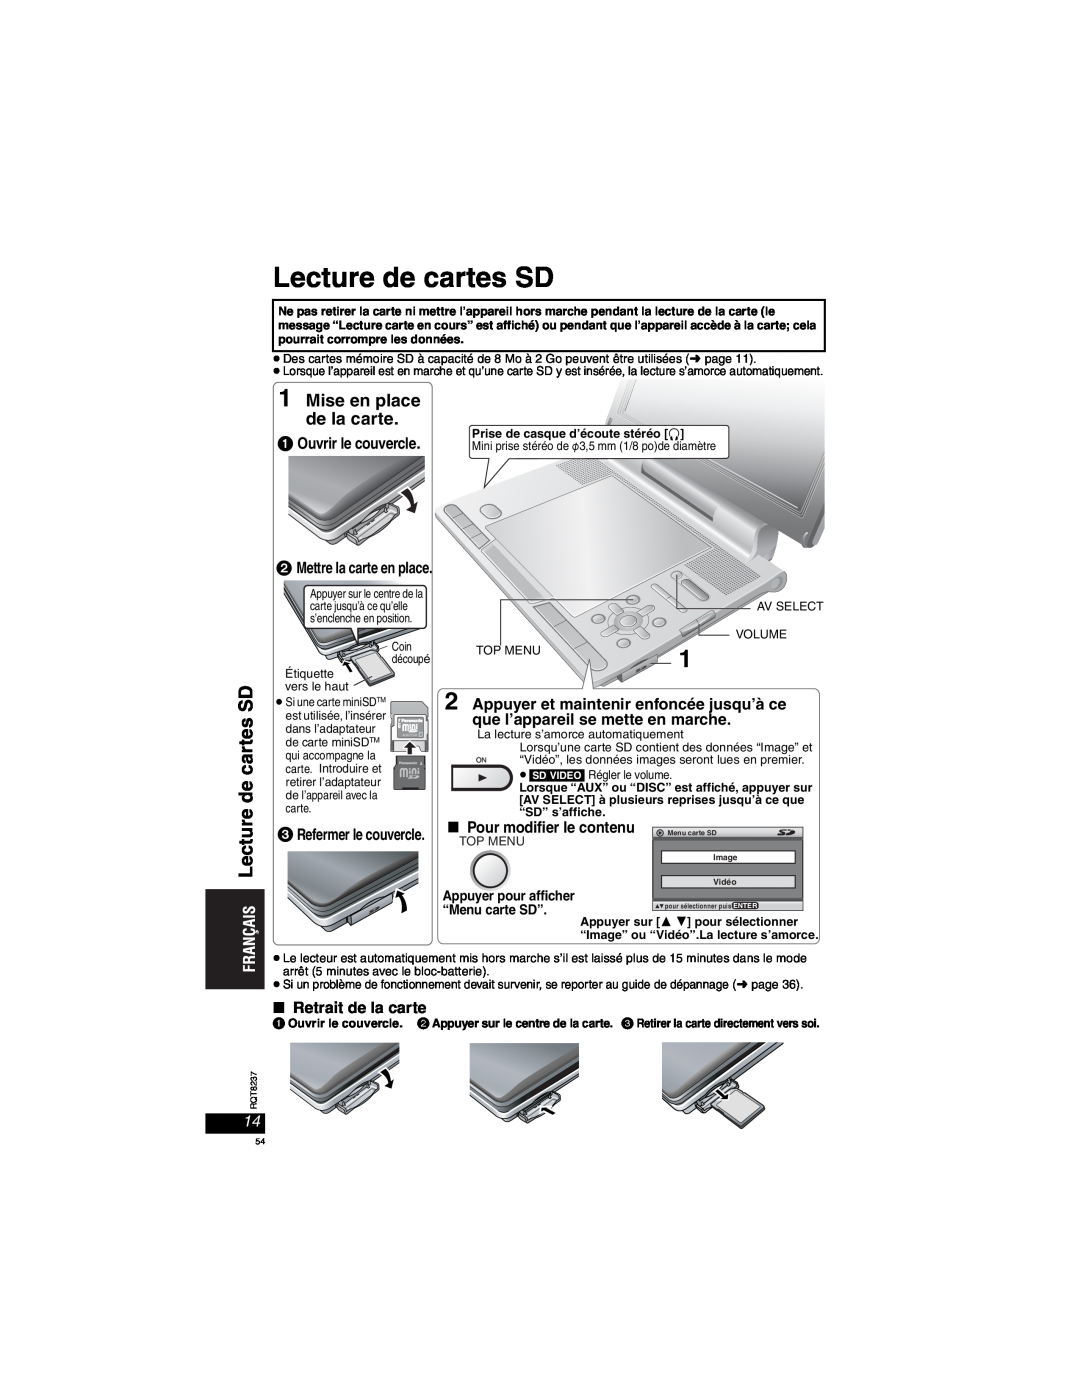 Panasonic DVD-LX97 Lecture de cartes SD, Ouvrir le couvercle, Appuyer et maintenir enfoncée jusqu’à ce, “Menu carte SD” 